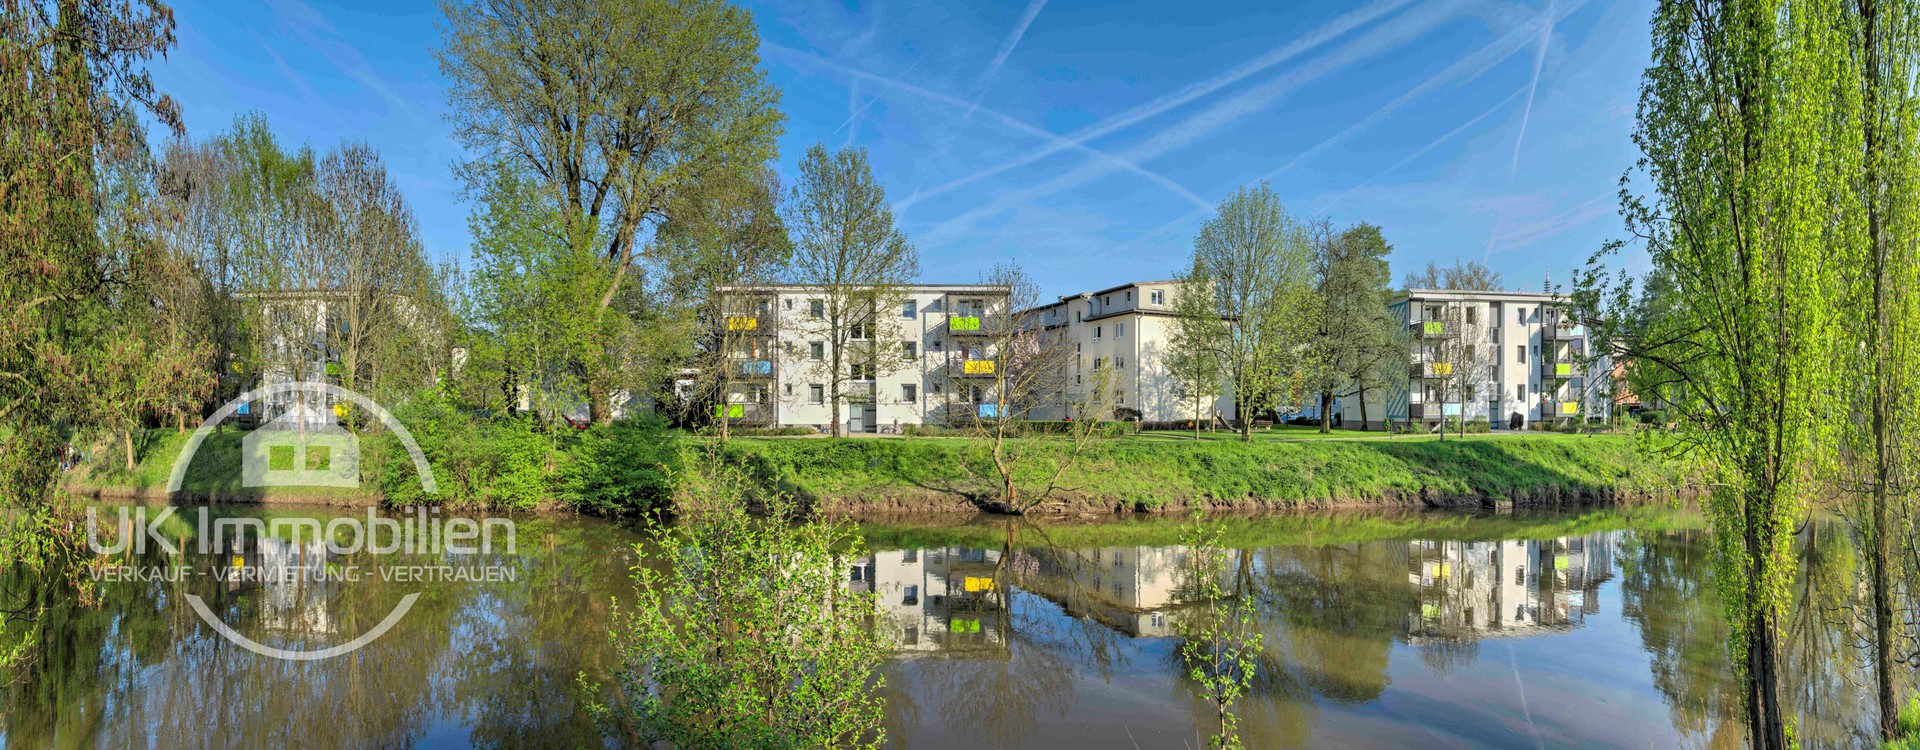 Immobilienmakler-Frankfurt-Eschersheim-Nidda-Ufer.jpg